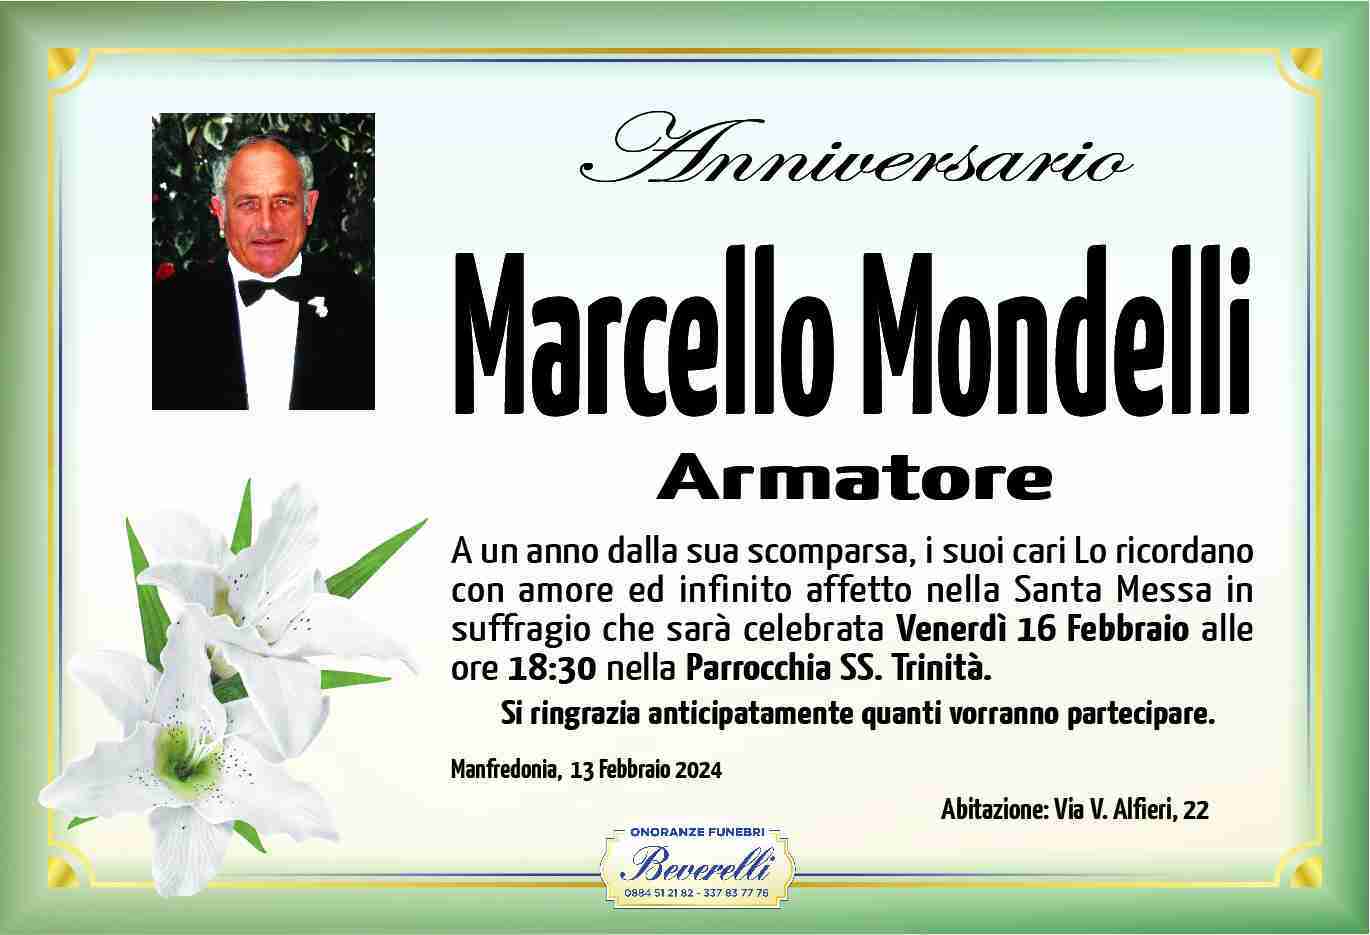 Marcello Mondelli